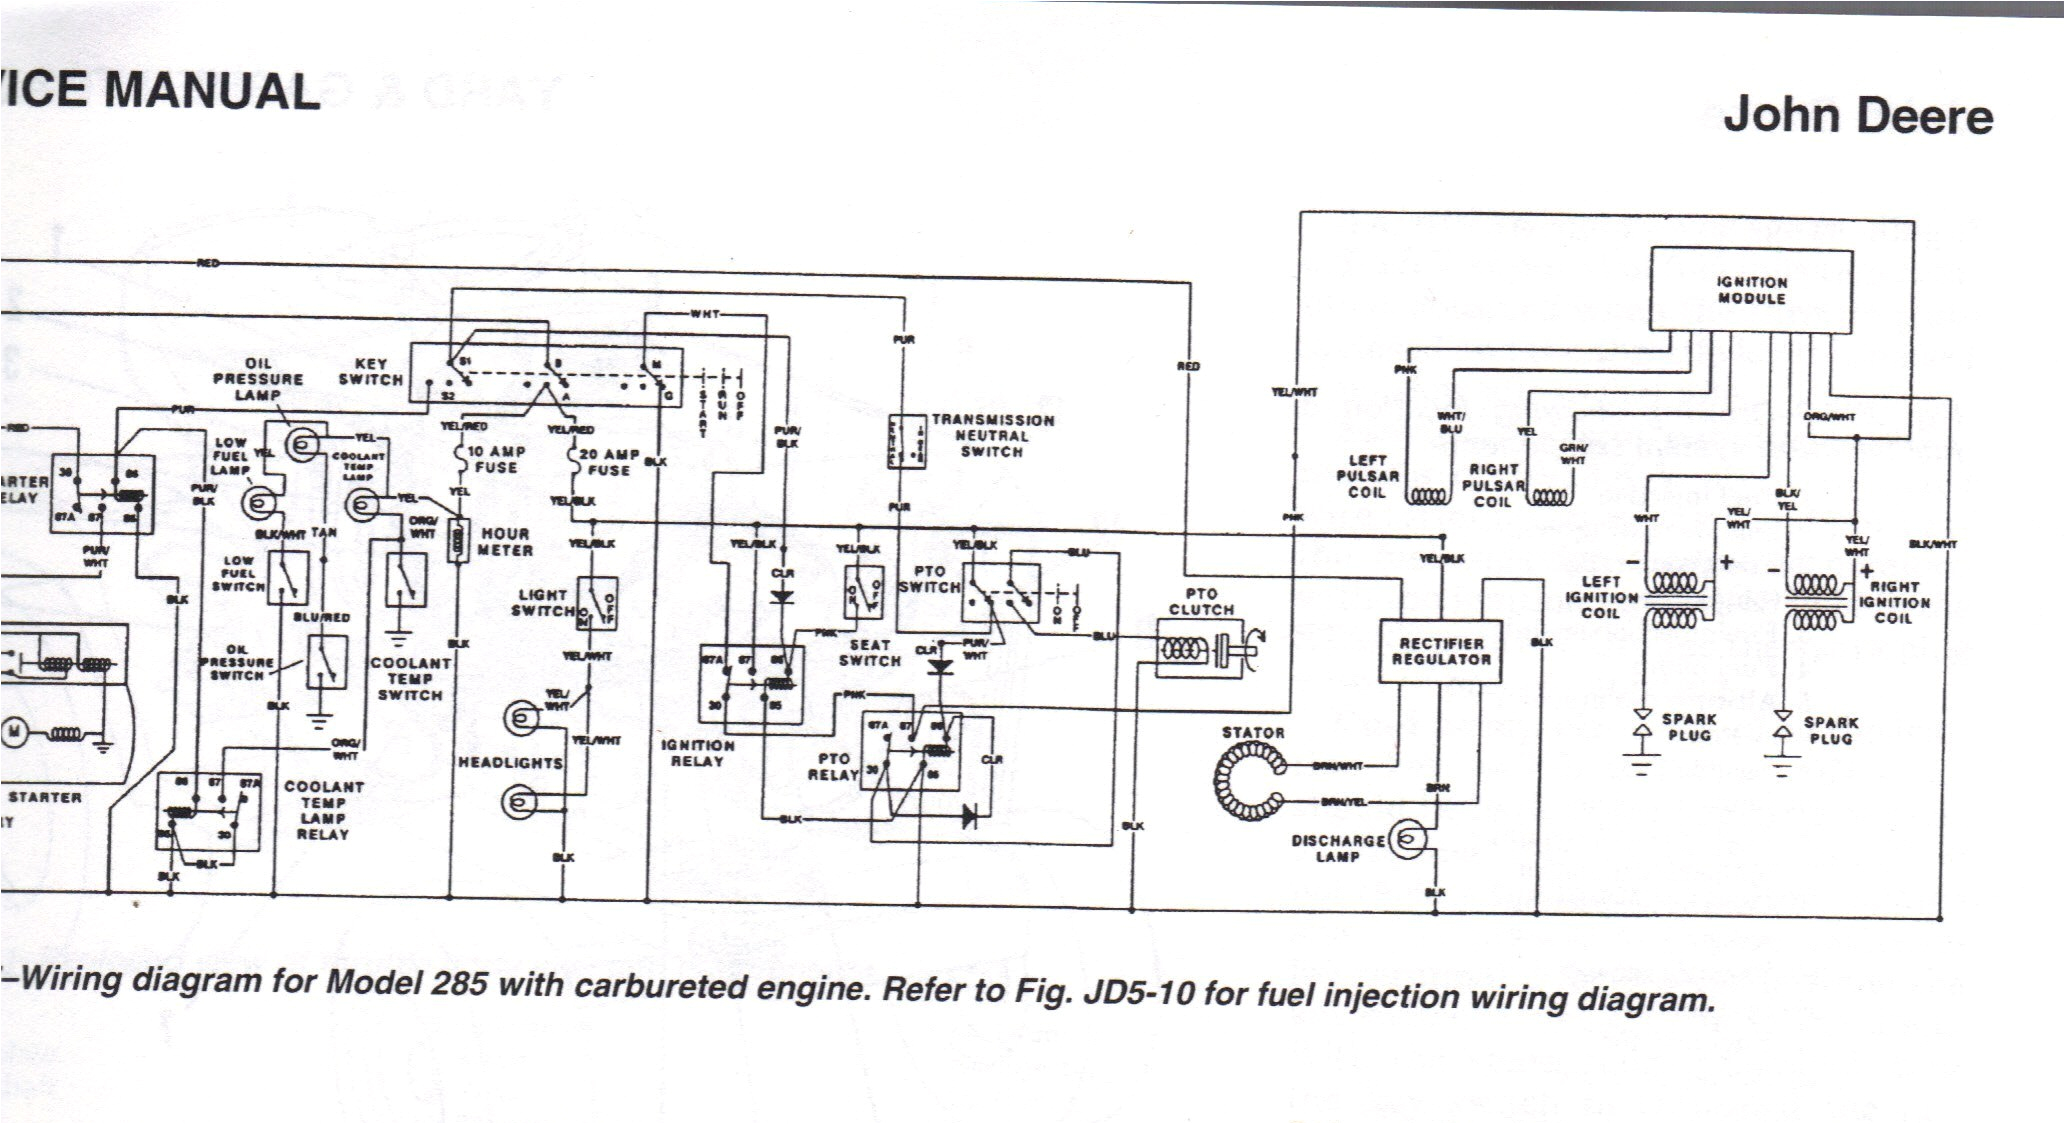 for 420 garden tractor wiring schema diagram databasejohn deere 420 wiring diagram use wiring diagram for